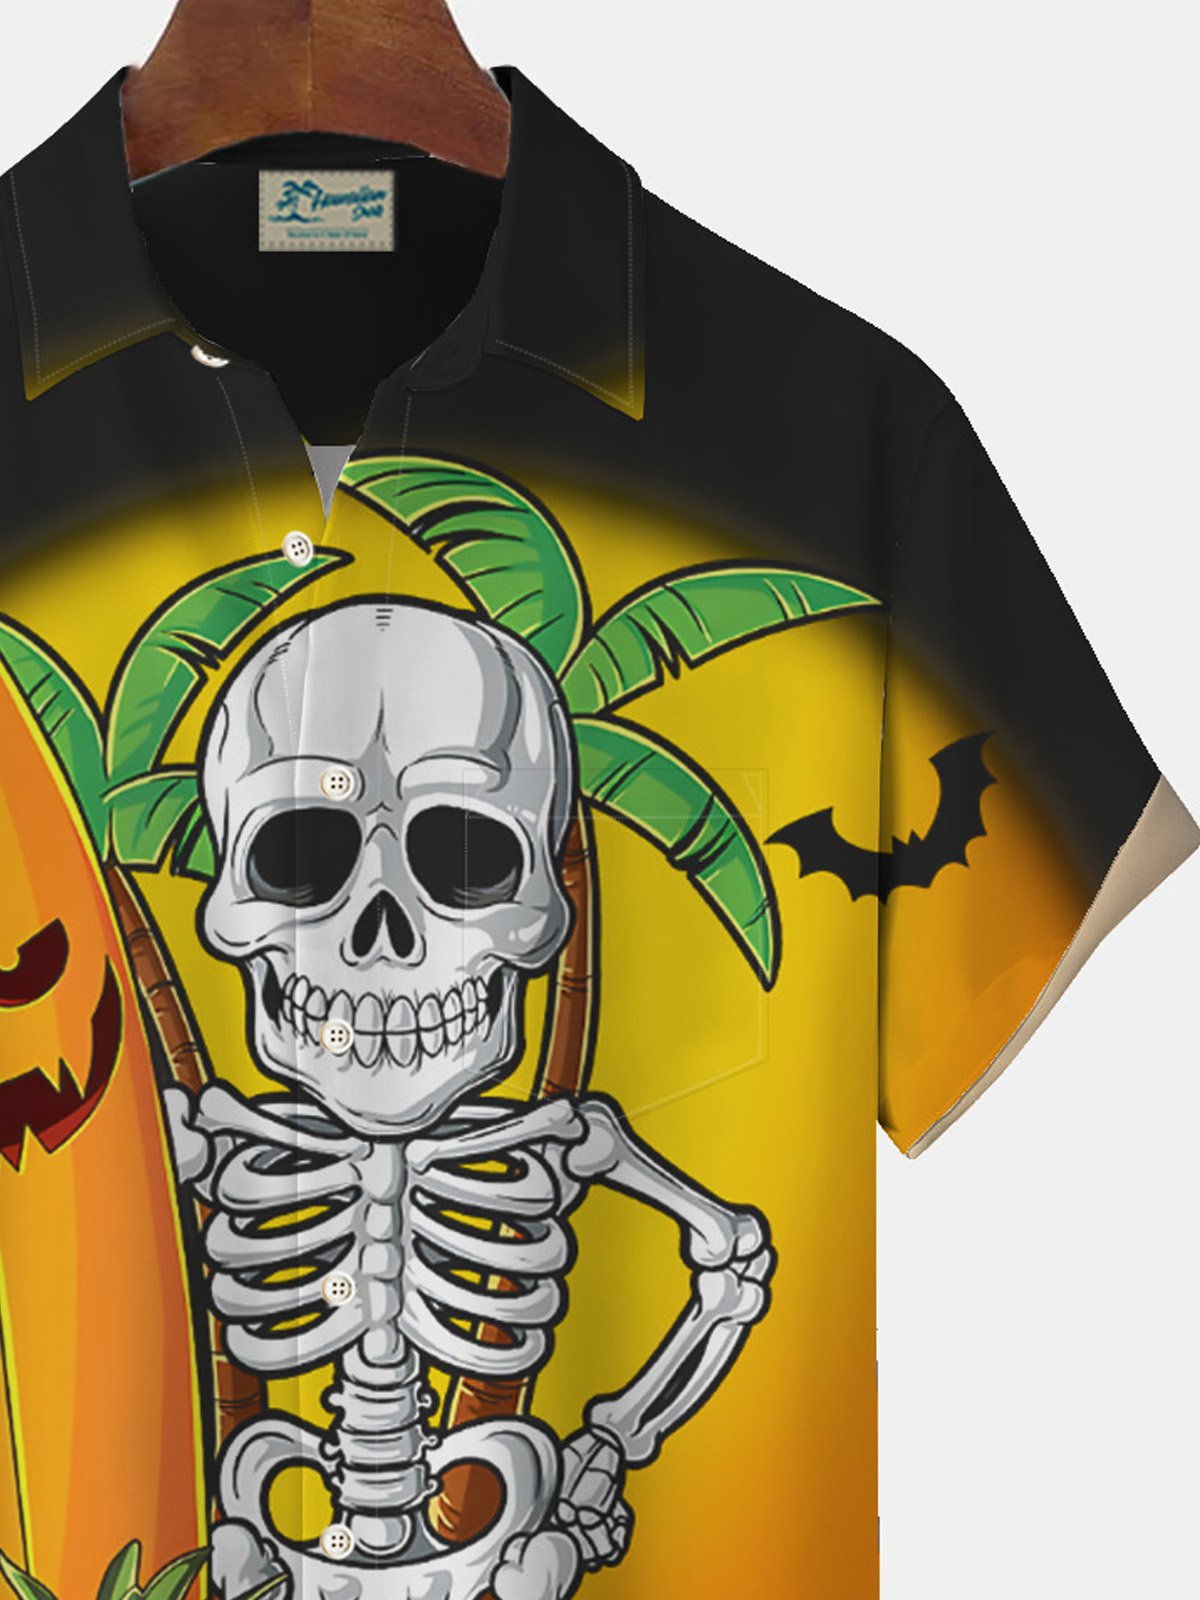 Royaura Halloween Skull Print Men's Button Pocket Short Sleeve Shirt